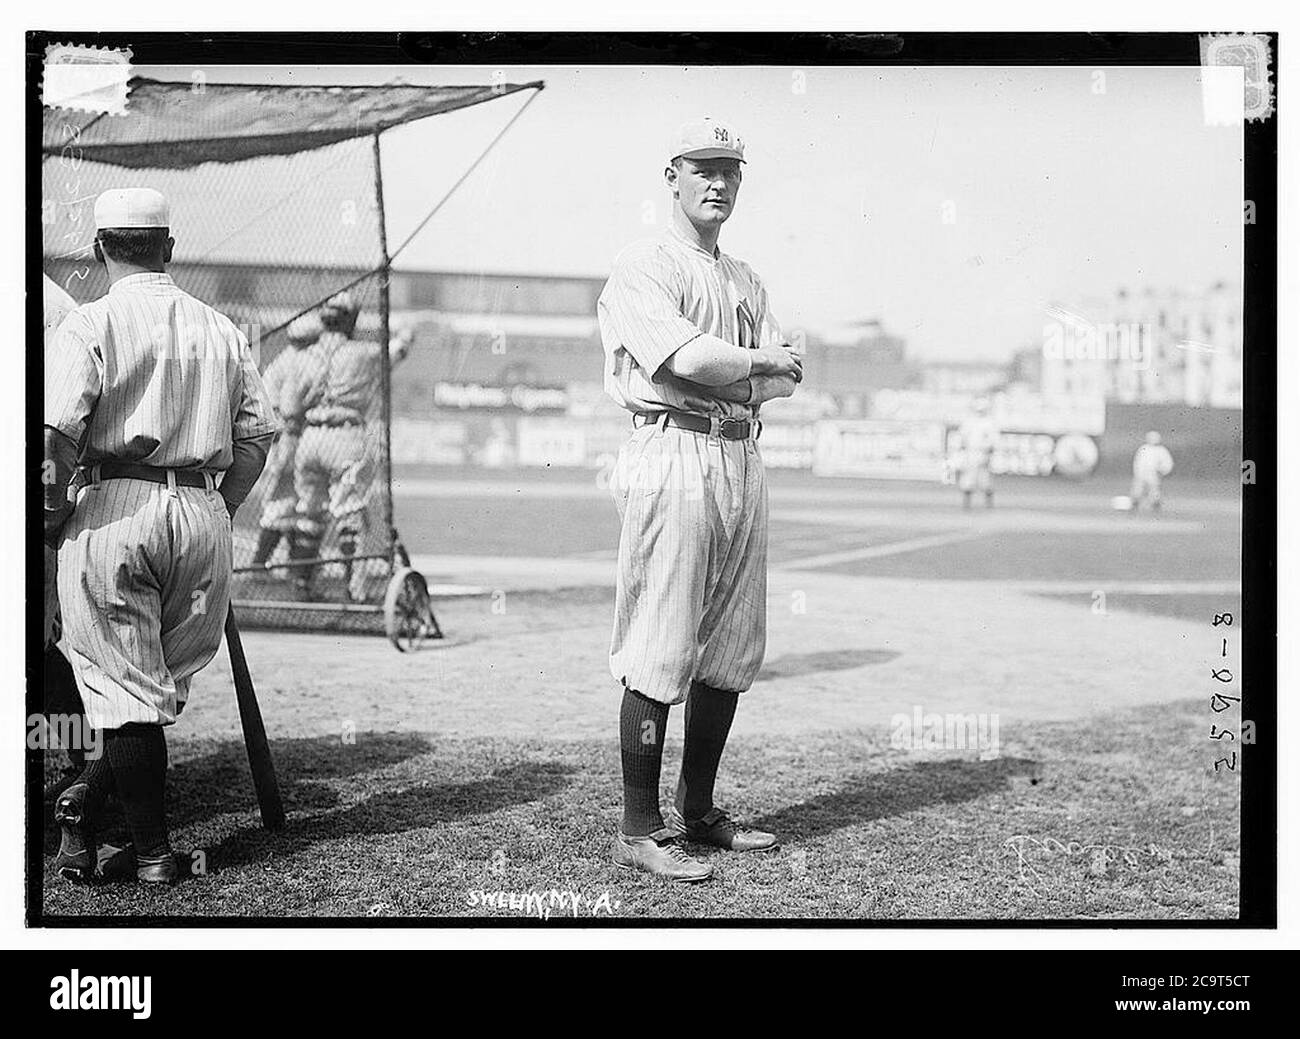 Jeff Sweeney, New York AL (baseball)] Stock Photo - Alamy